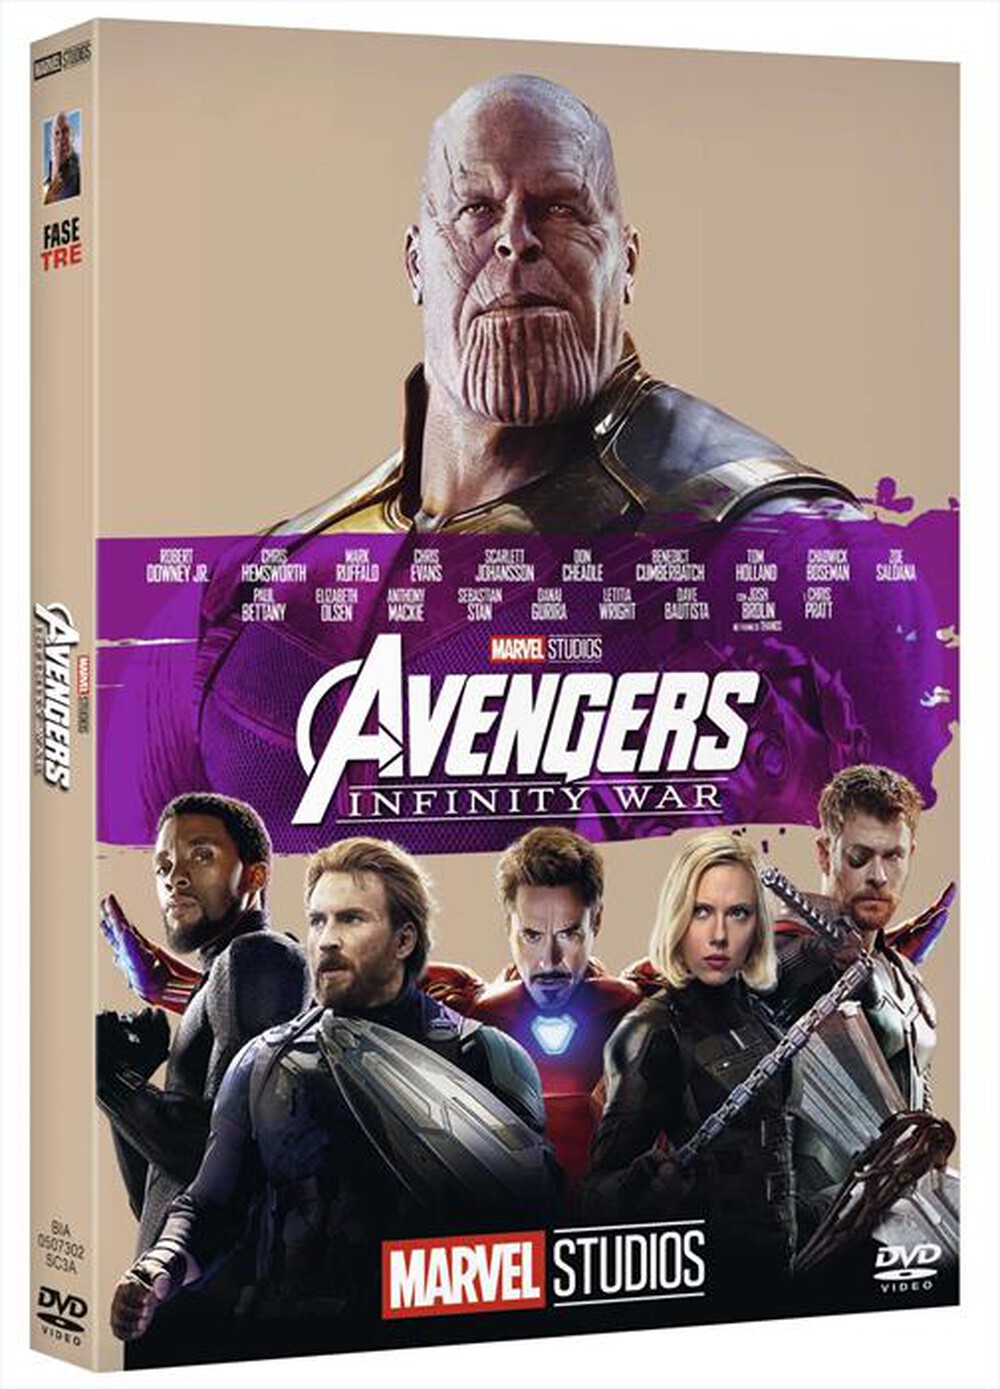 "WALT DISNEY - Avengers: Infinity War (10 Anniversario) - "